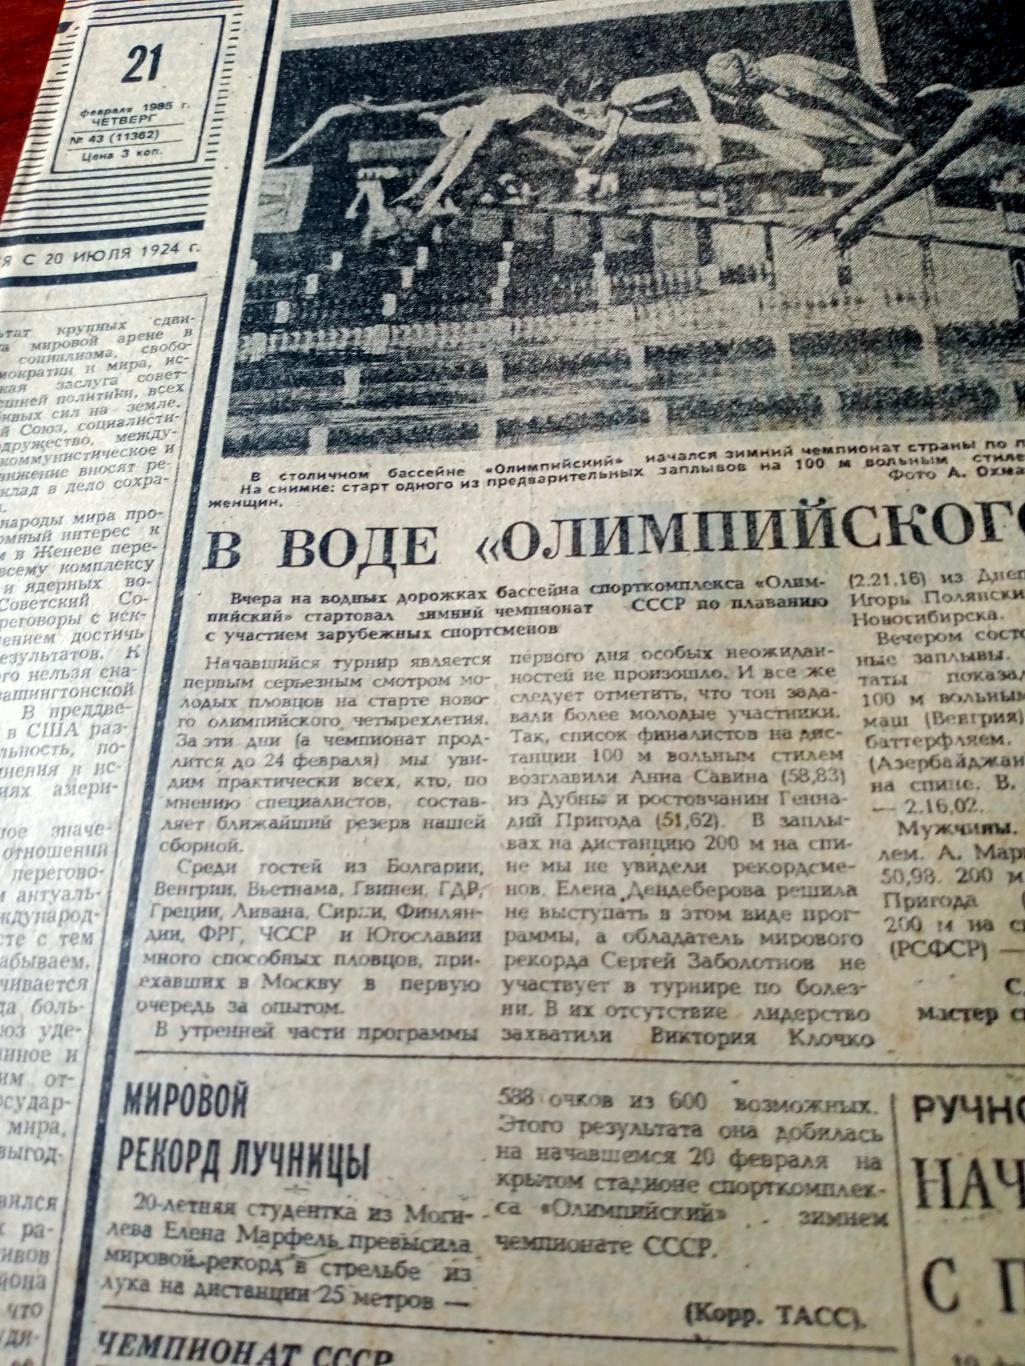 Наши победы. Советский спорт. 1985 год. 21 февраля